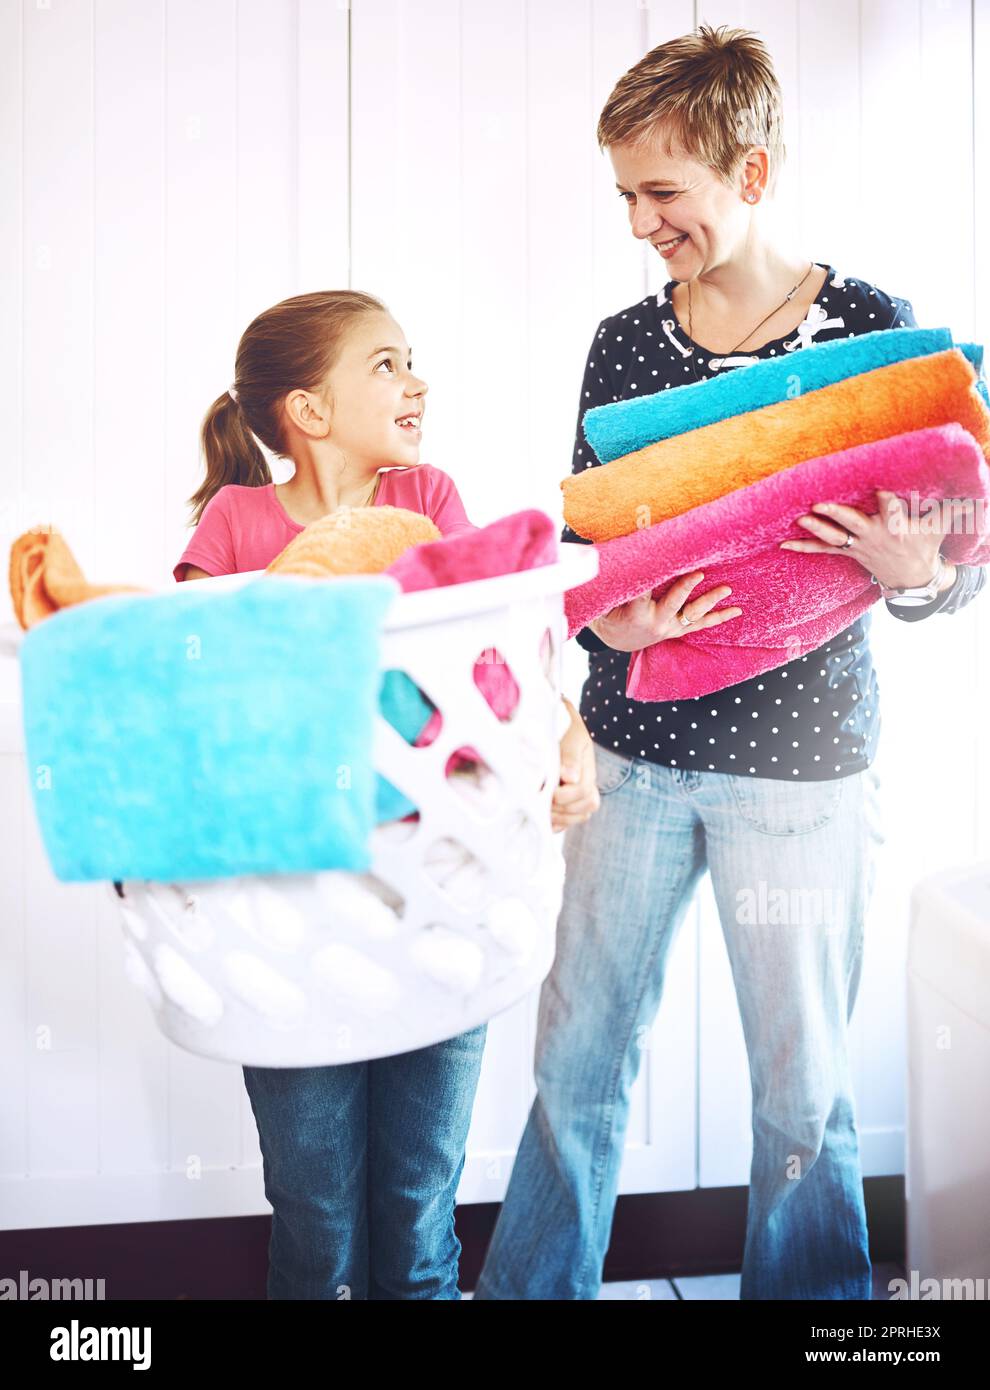 Facciamo la mamma migliore della squadra. Una madre e una figlia allegre ciascuno tenendo un mucchio di asciugamani appena lavati mentre si guardano a casa. Foto Stock